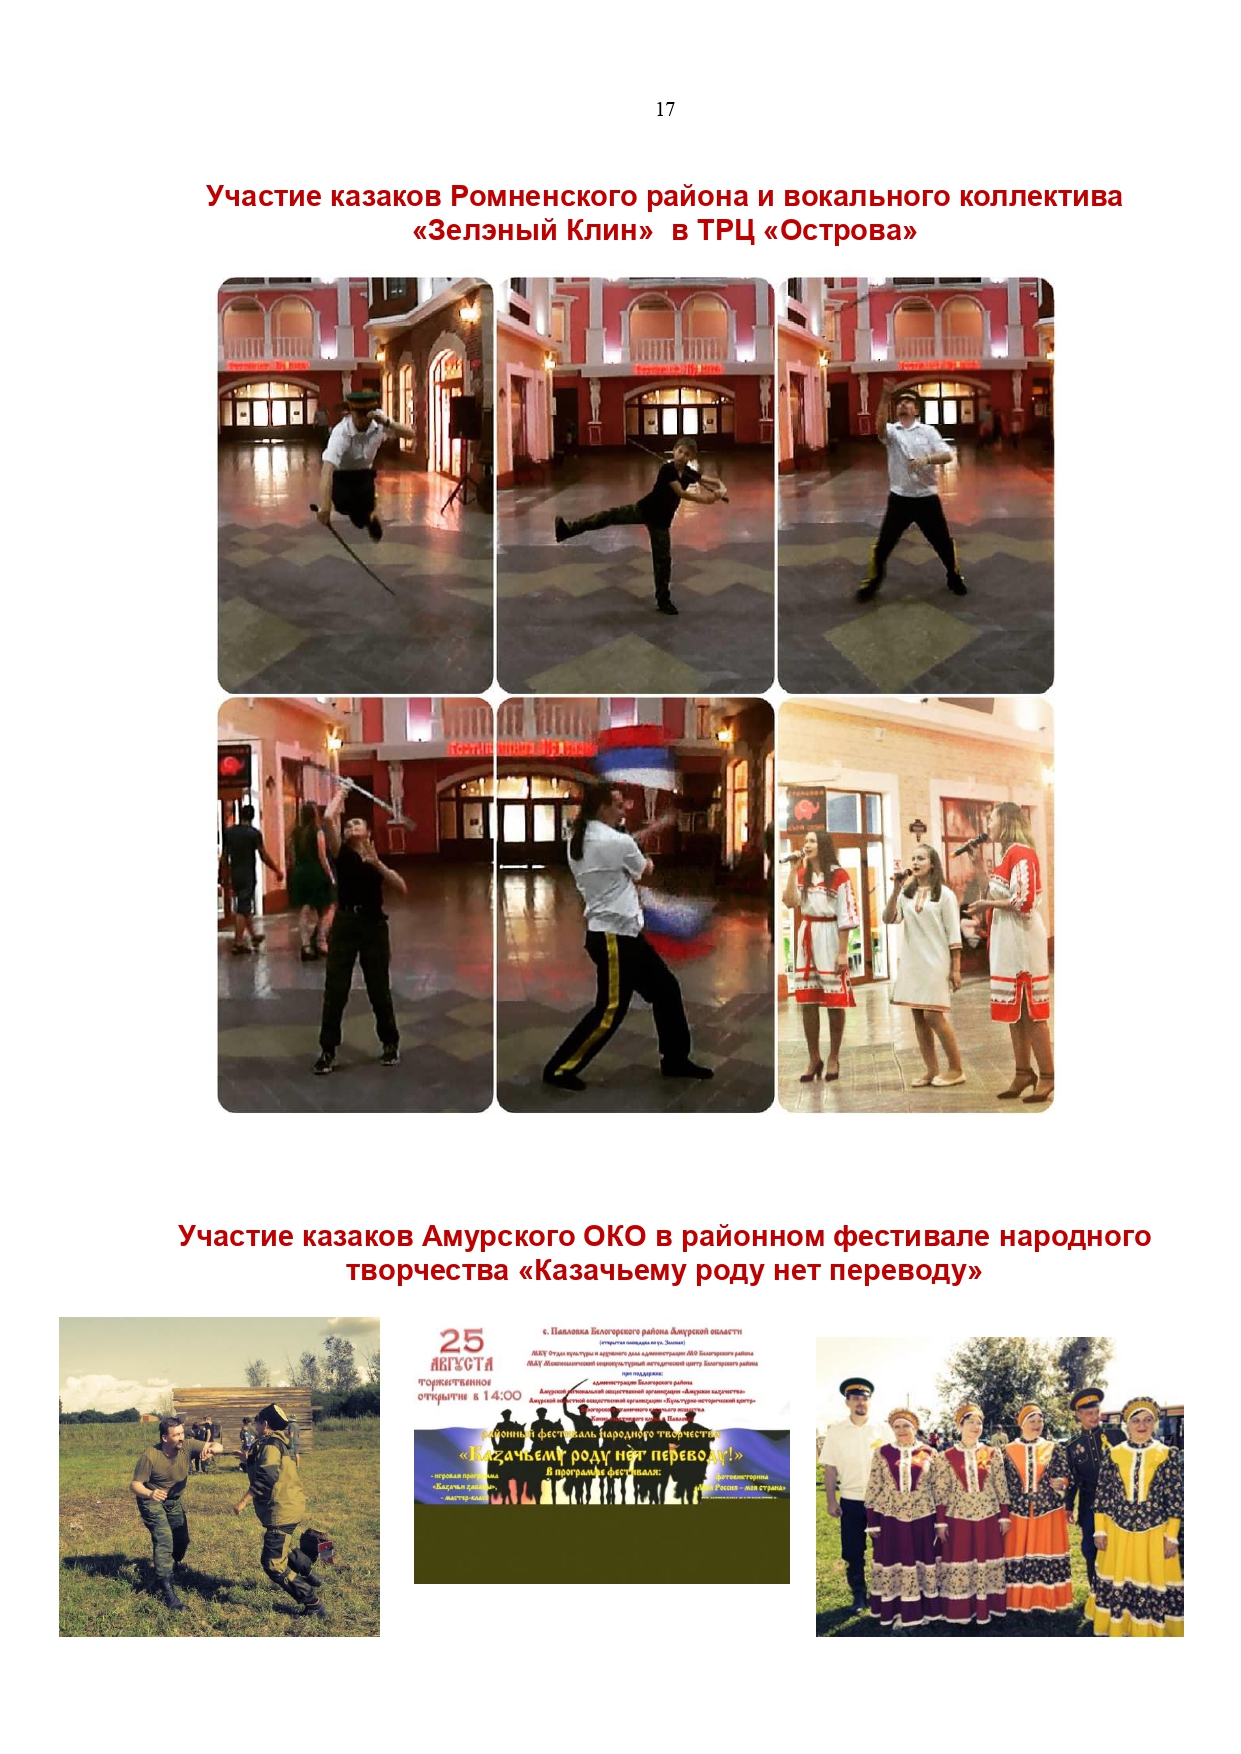 Публичный годовой отчет Амурского окружного казачьего общества за 2019 год Page 0017